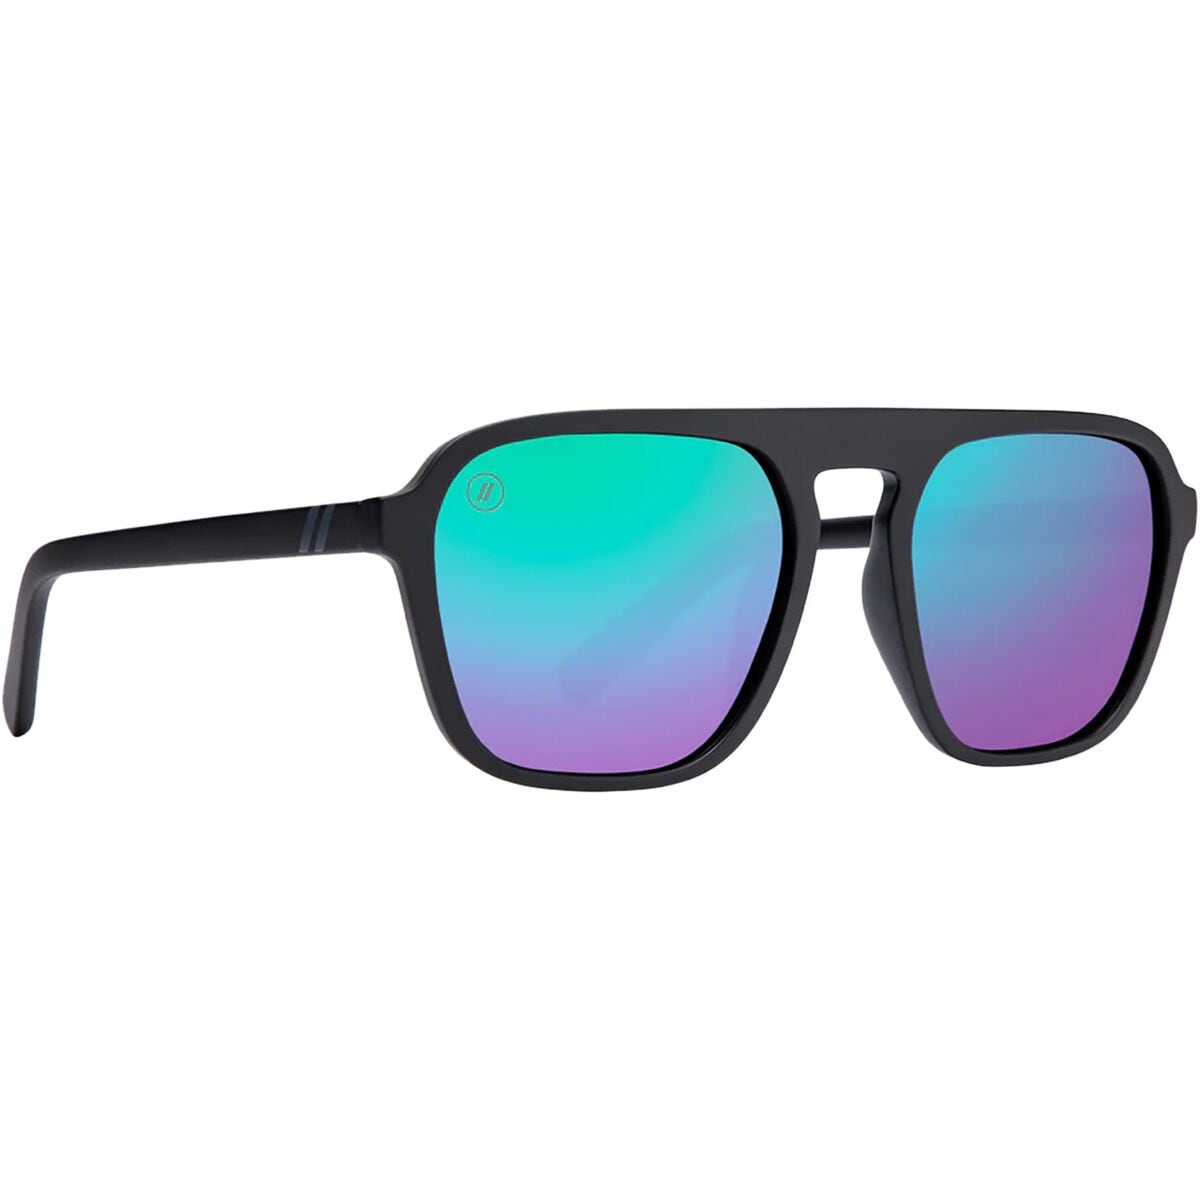 Поляризованные солнцезащитные очки meister Blenders Eyewear, цвет mister romance gradient